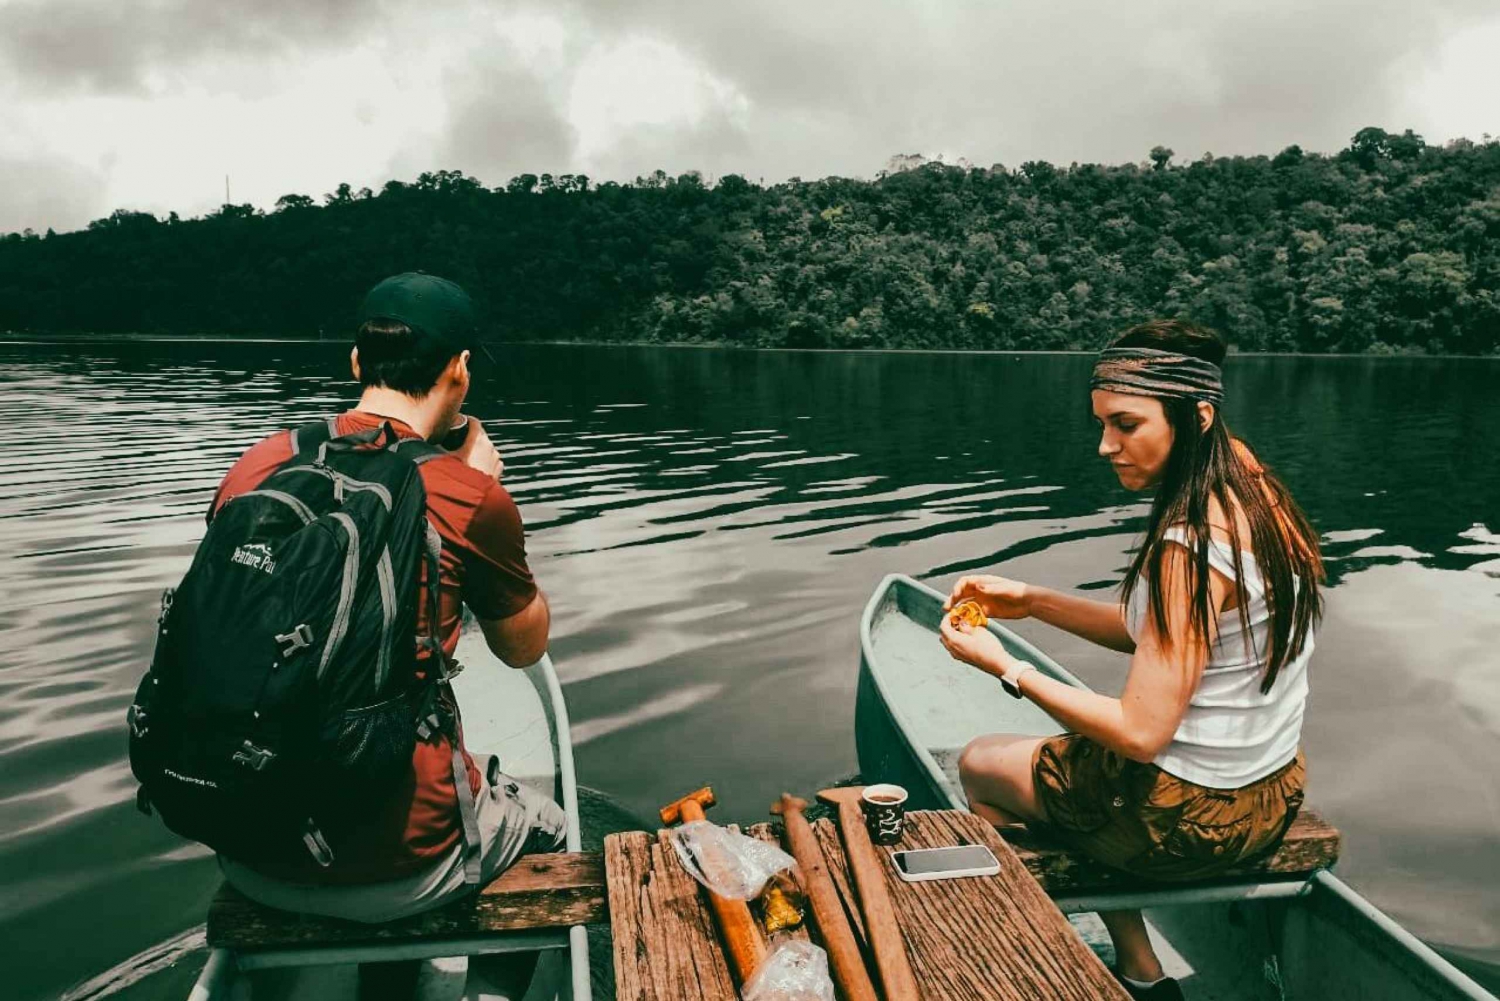 Munduk: In canoa nel lago e alla scoperta di un tempio segreto